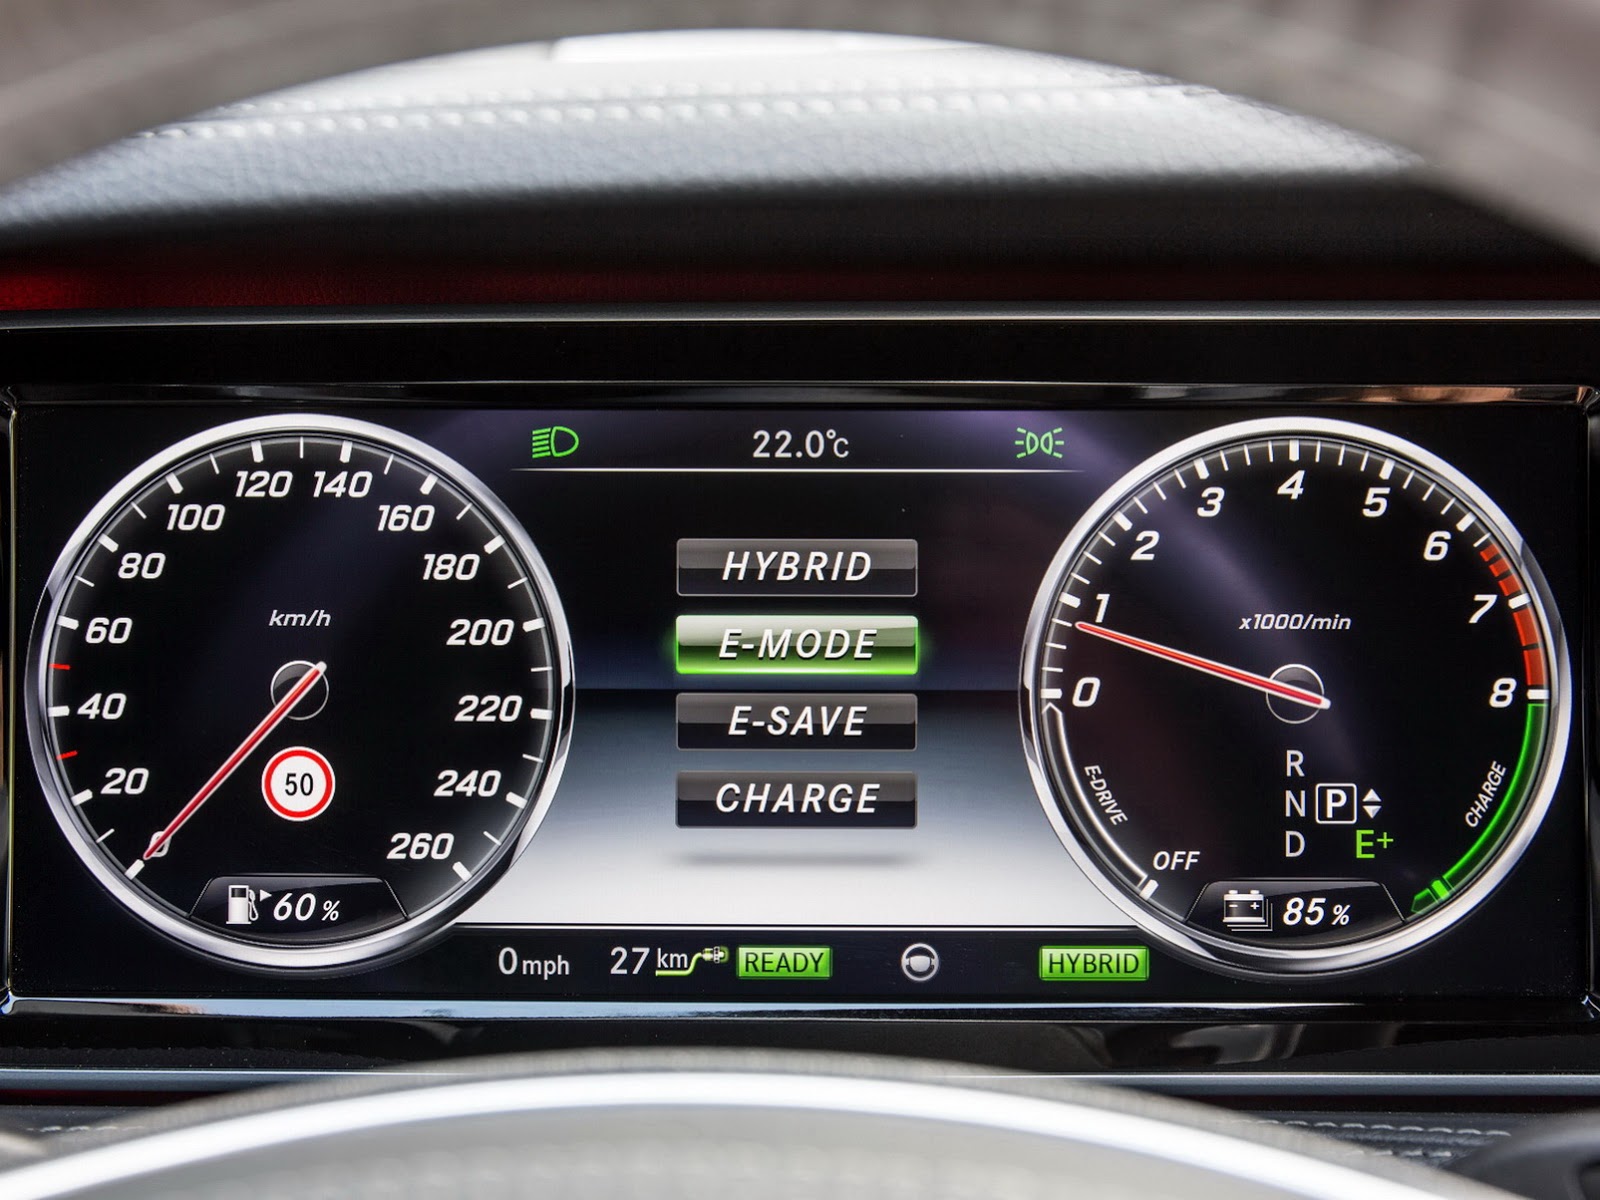 Llega el Mercedes Clase S 500 Plug-in Hybrid a los concesionarios europeos